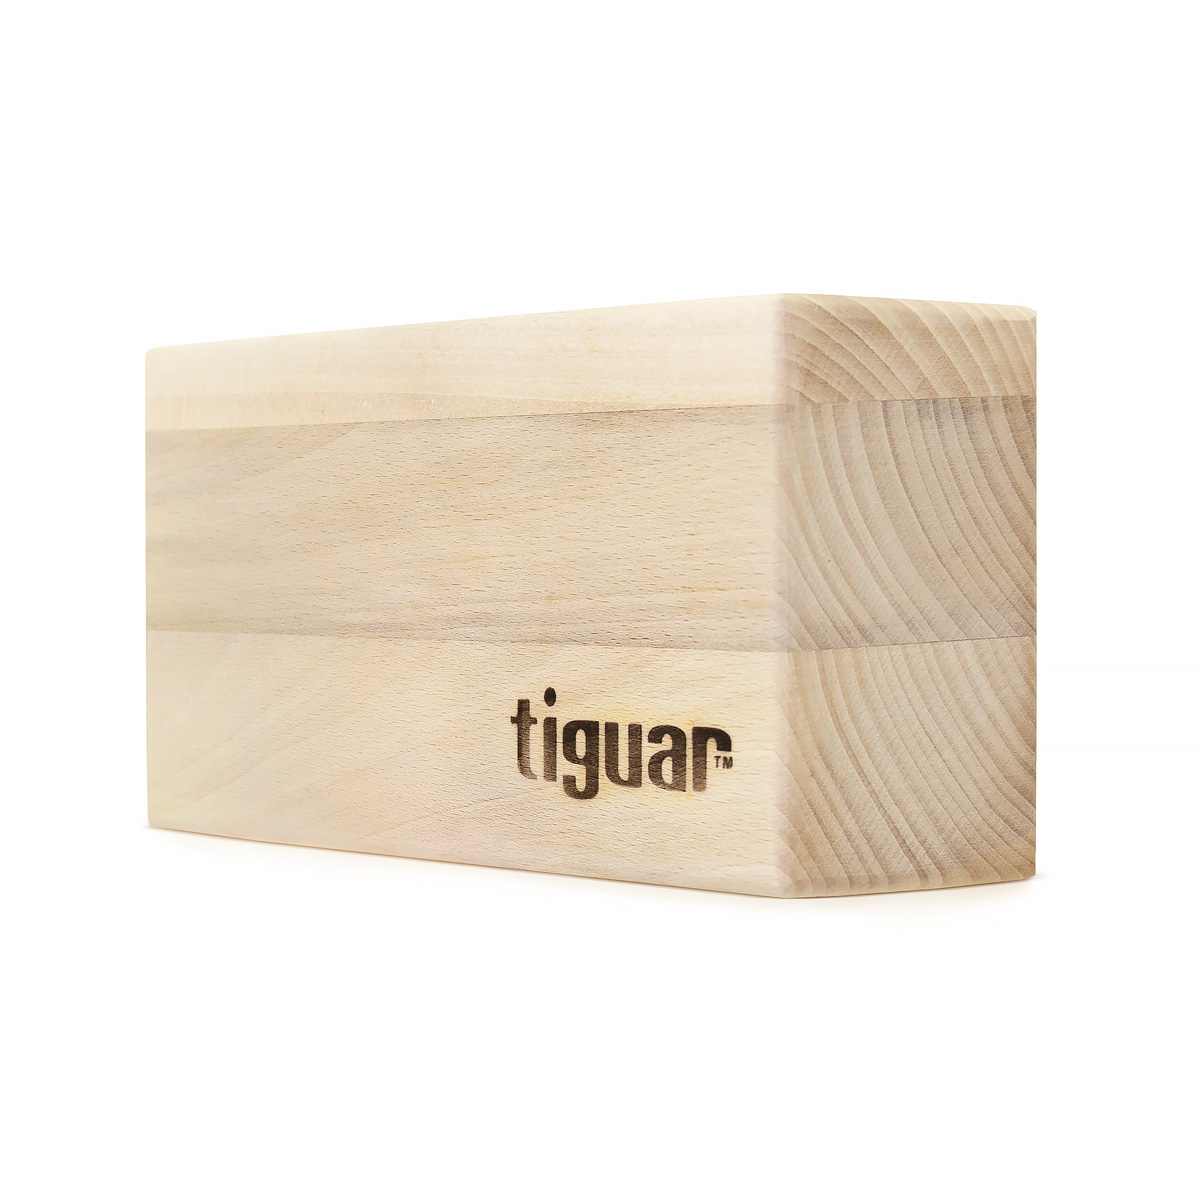 tiguar wooden yoga block